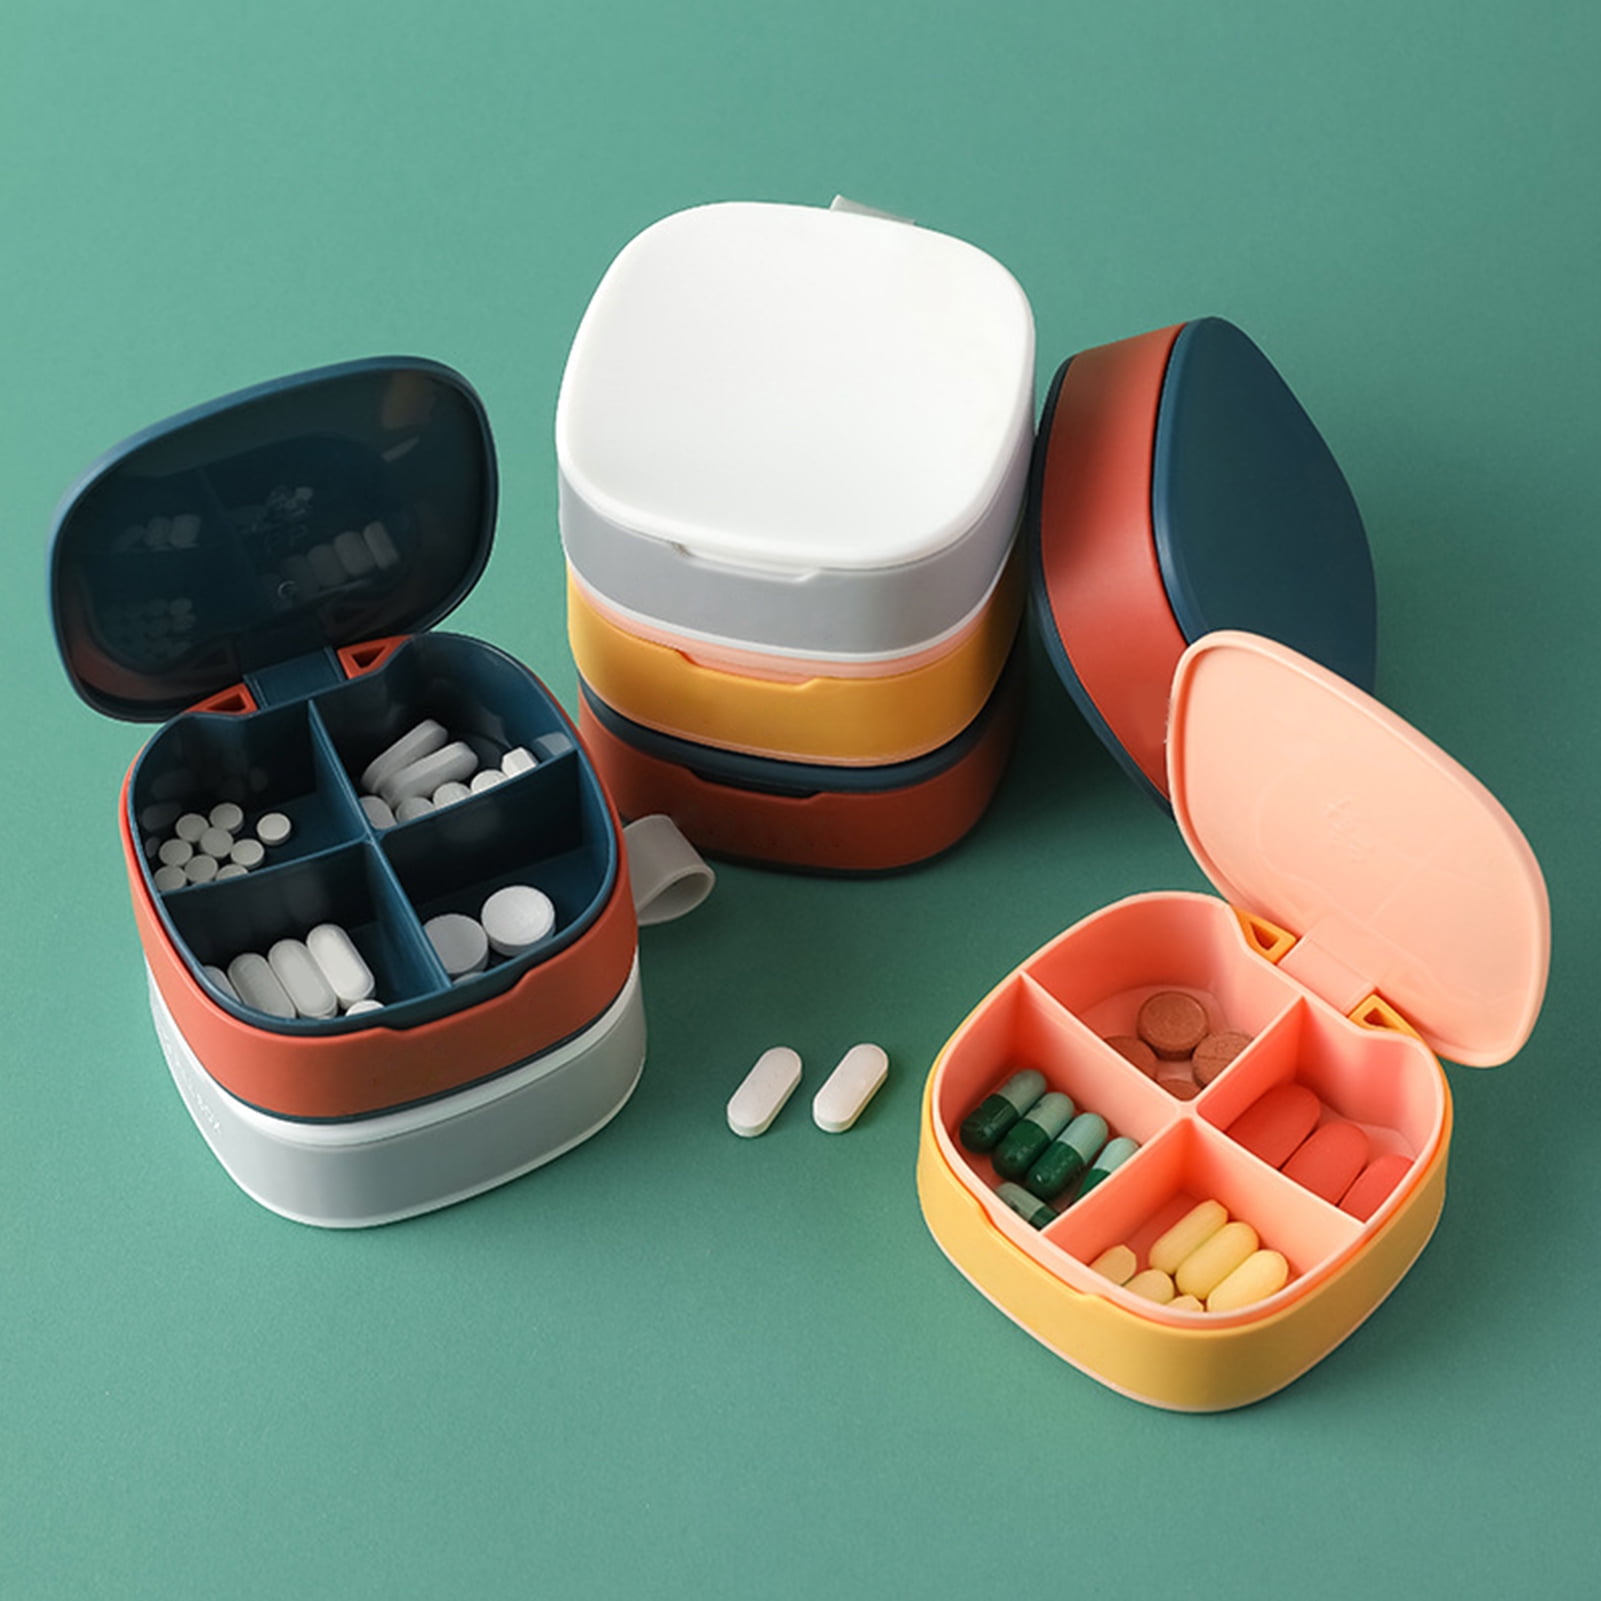 Small Pill Box, Travel Pill Case, Dtouayz Portable Medicine